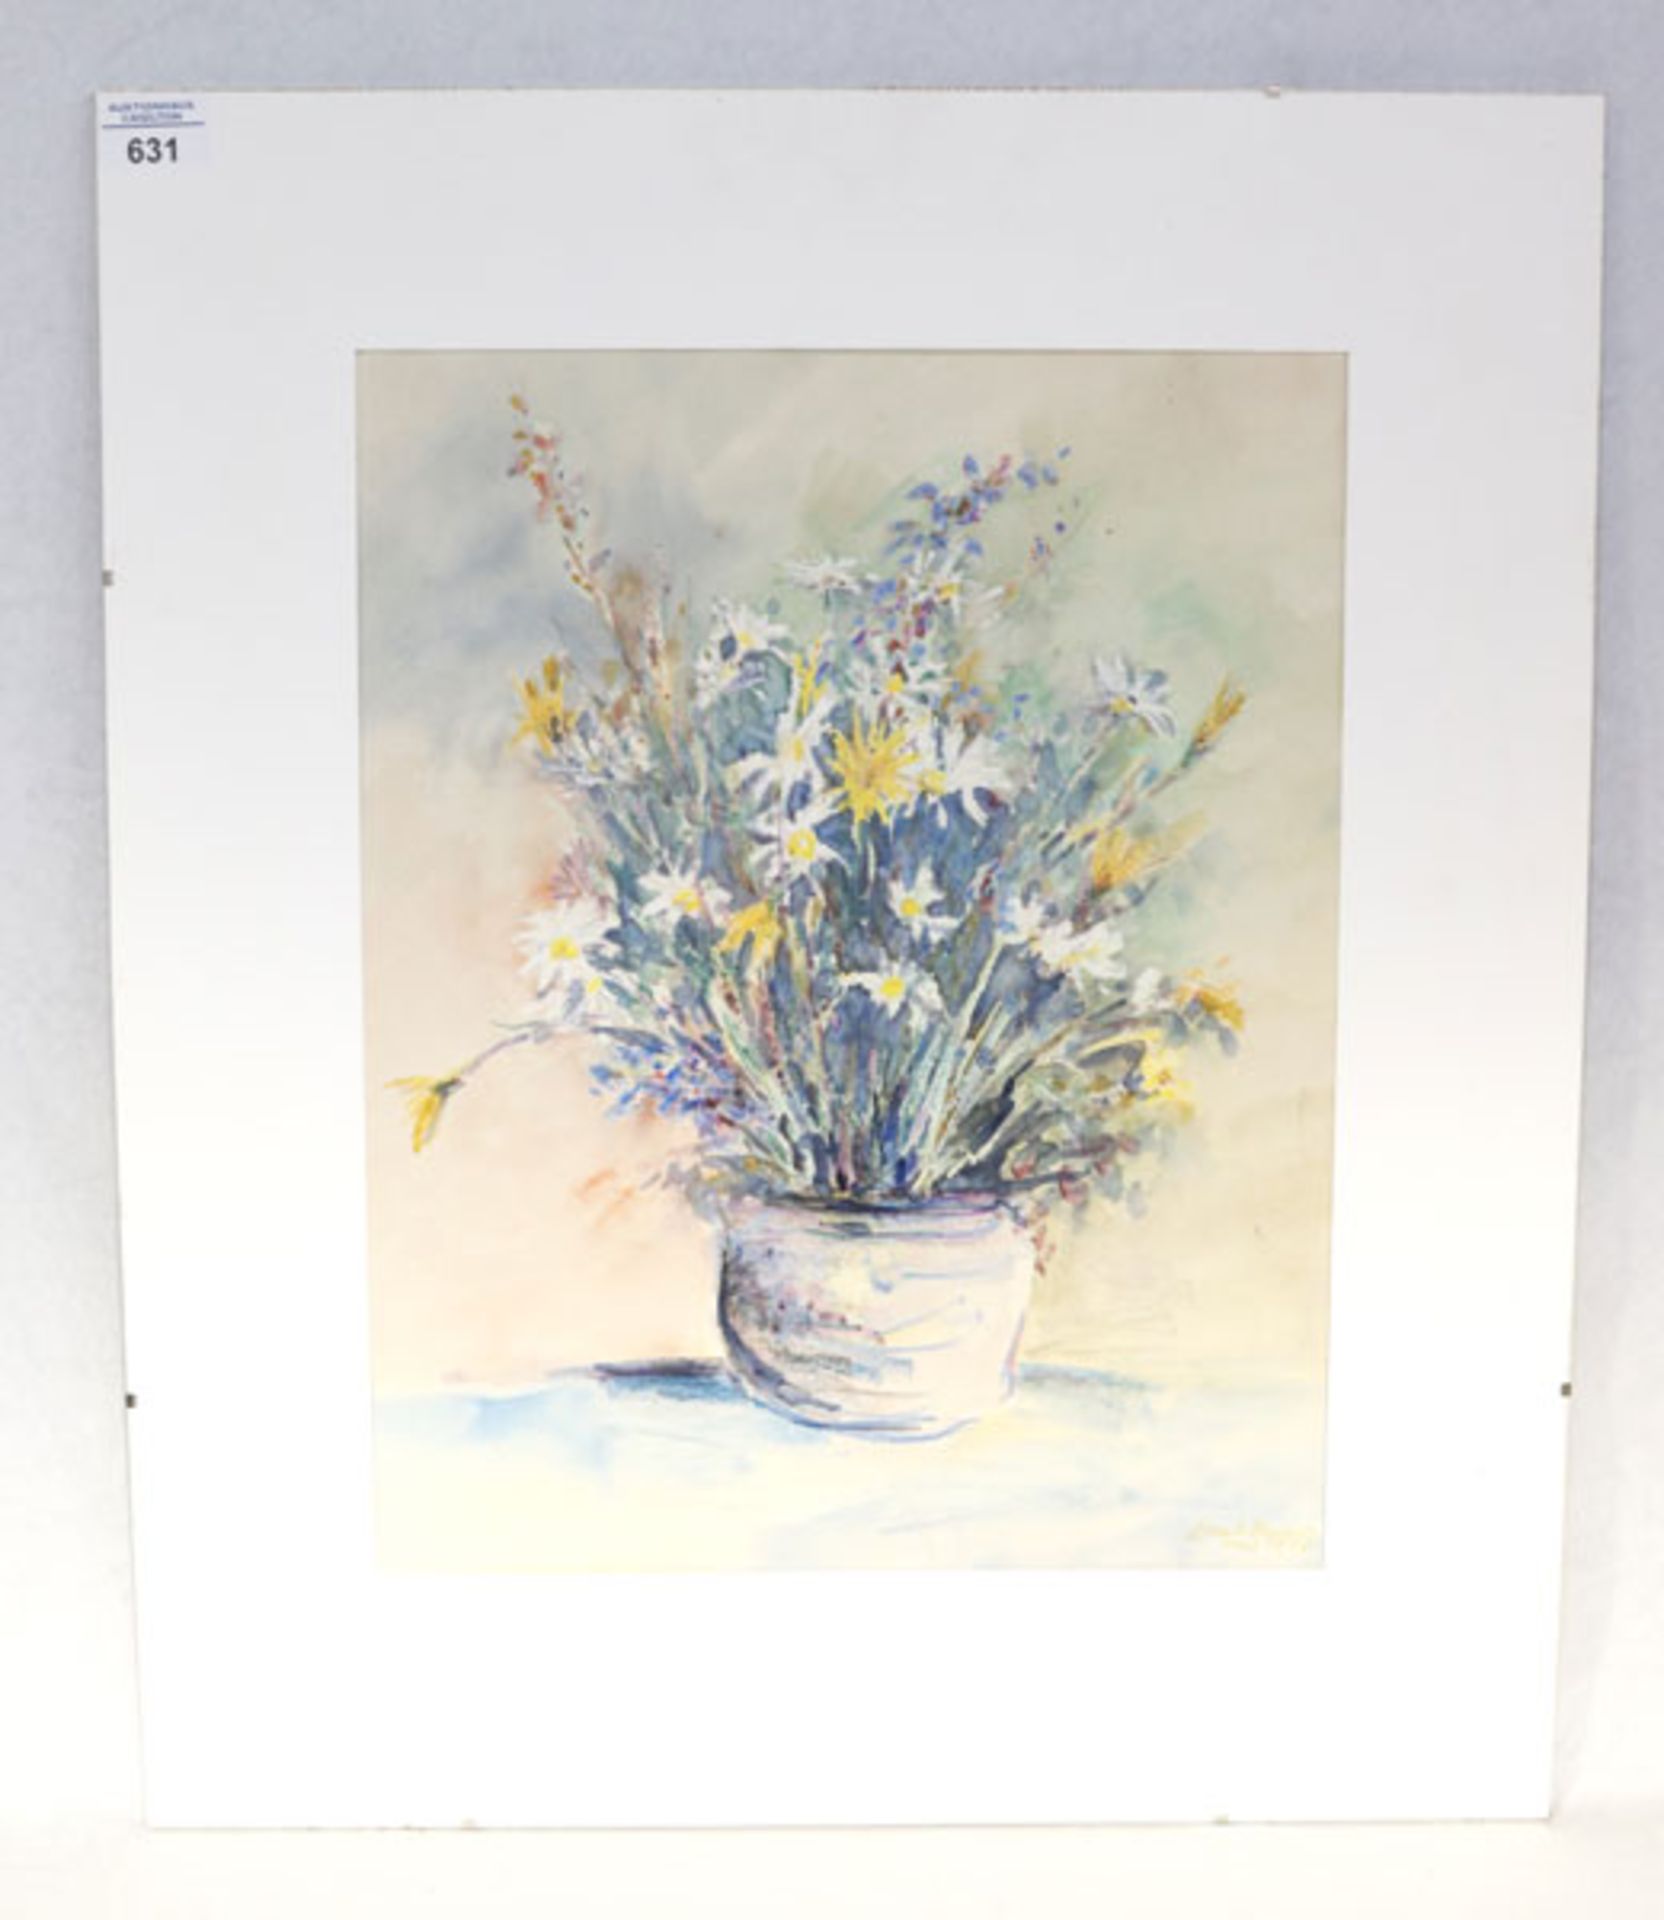 Zeichnung 'Sommerblumen in Vase', signiert Ernst Baier, 1988, mit Passepartout, 60 cm x 50 cm